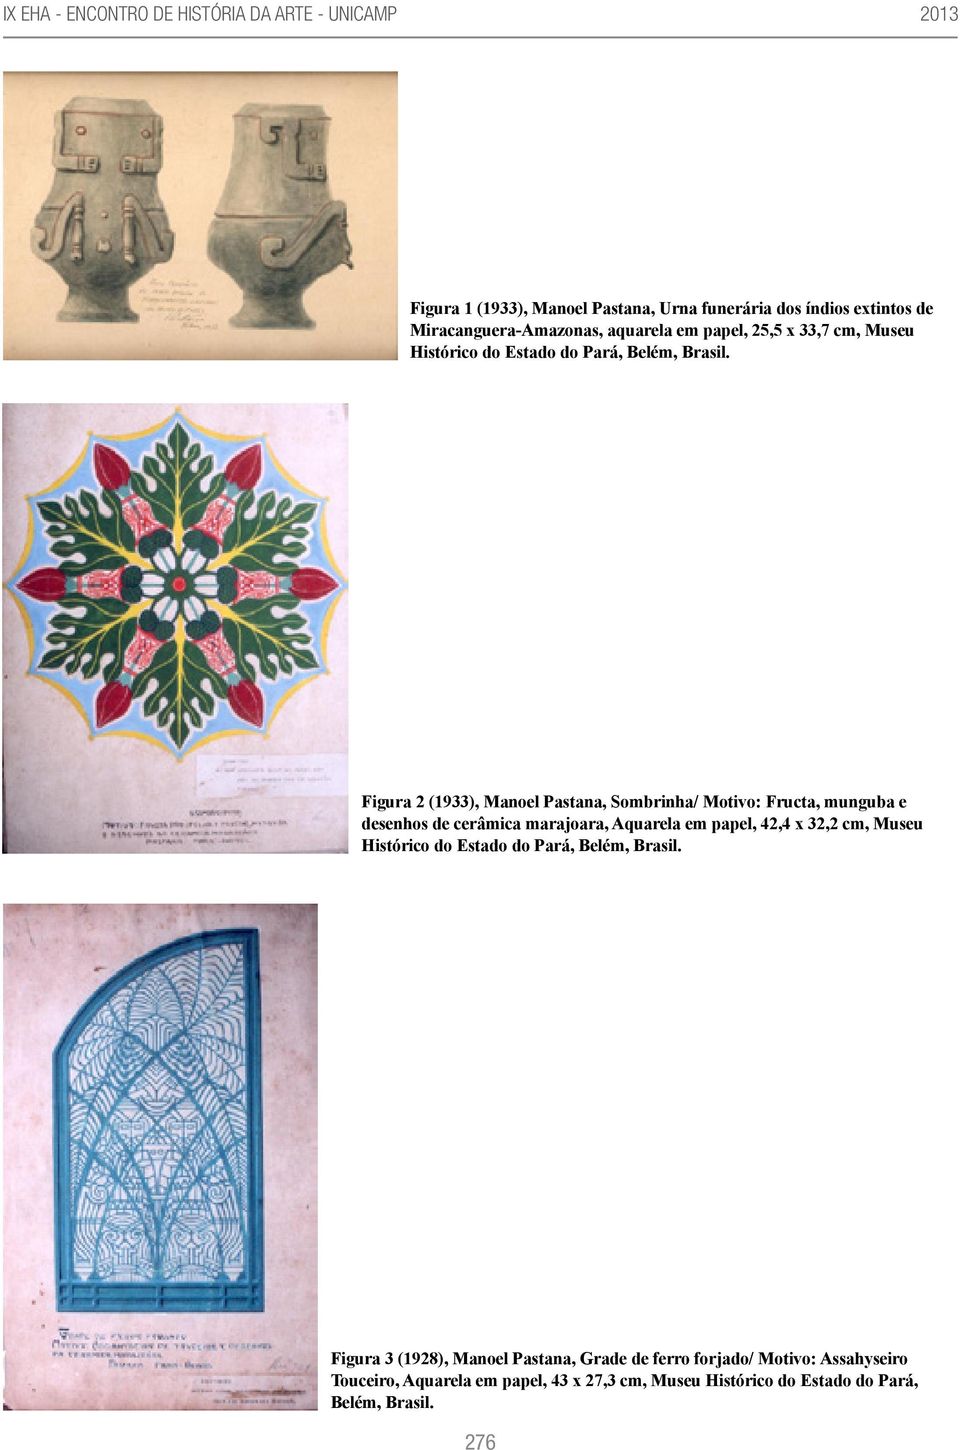 Figura 2 (1933), Manoel Pastana, Sombrinha/ Motivo: Fructa, munguba e desenhos de cerâmica marajoara, Aquarela em papel, 42,4 x 32,2